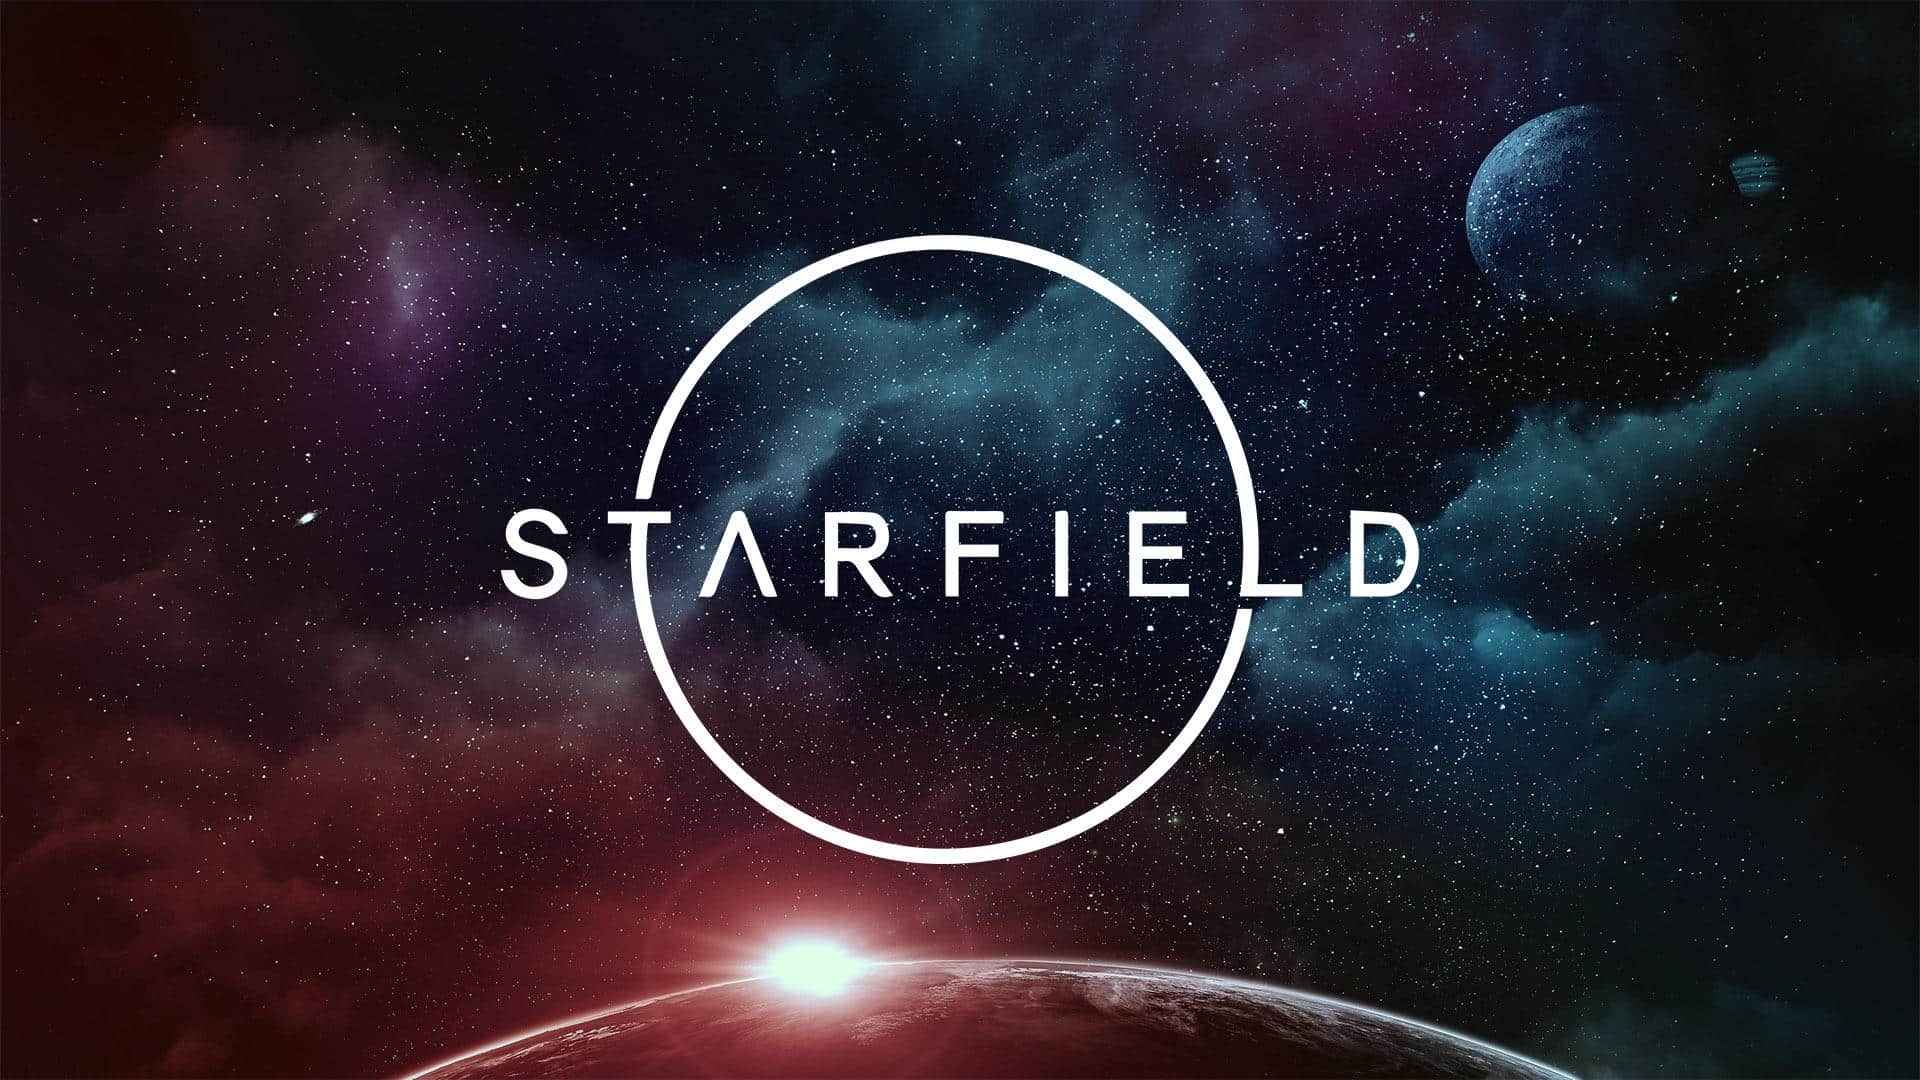 Imagens vazadas de Starfield mostram cenário inédito e nave